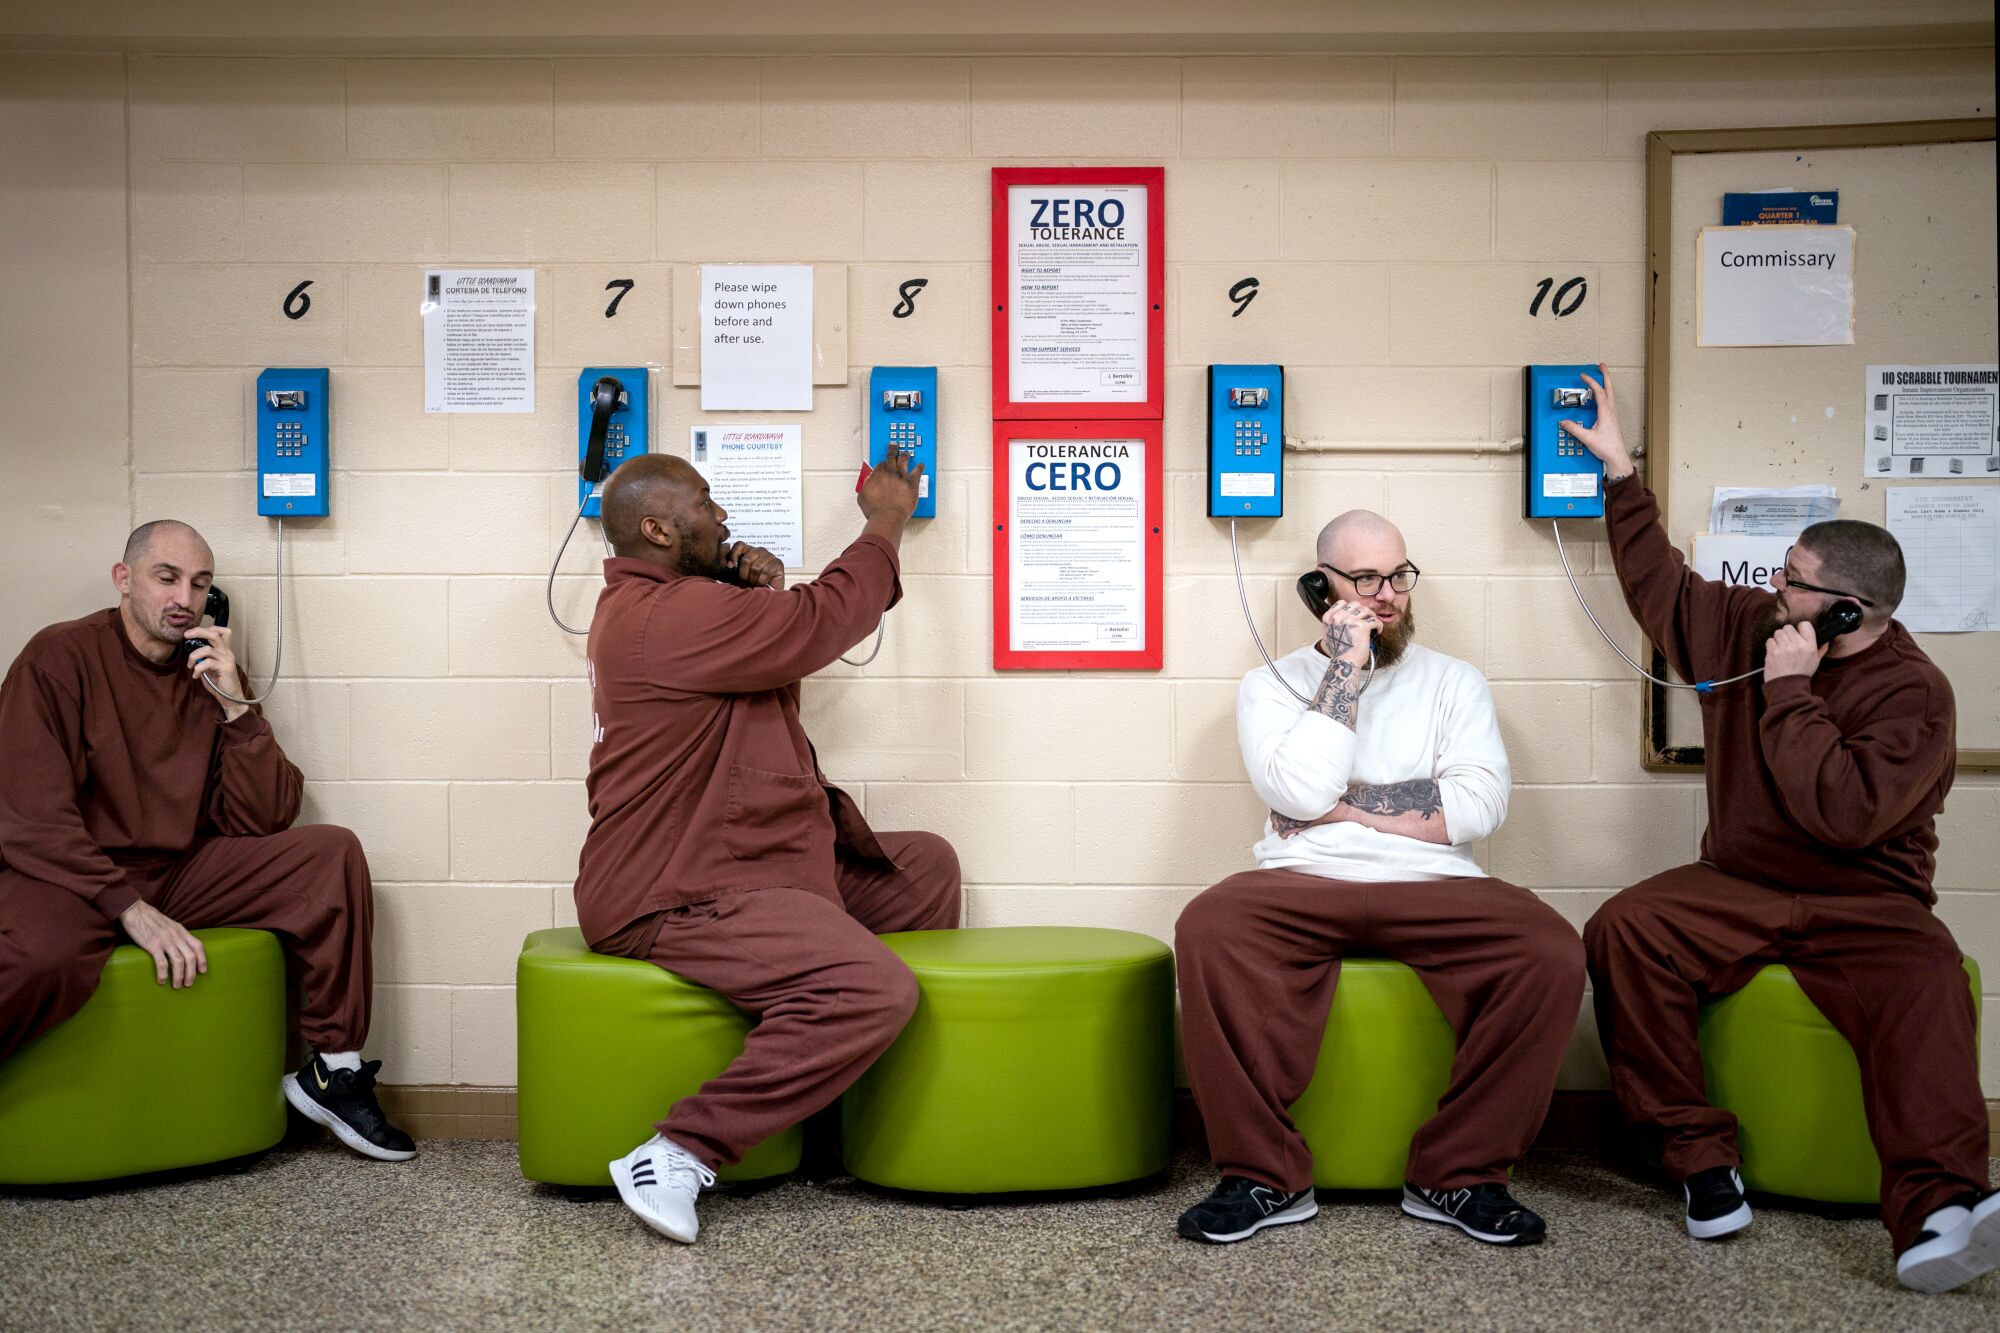 갈색 제복을 입은 4명의 수감자가 받침대에 앉아 그들 뒤에 있는 벽에 설치된 전화기로 각각 통화합니다.